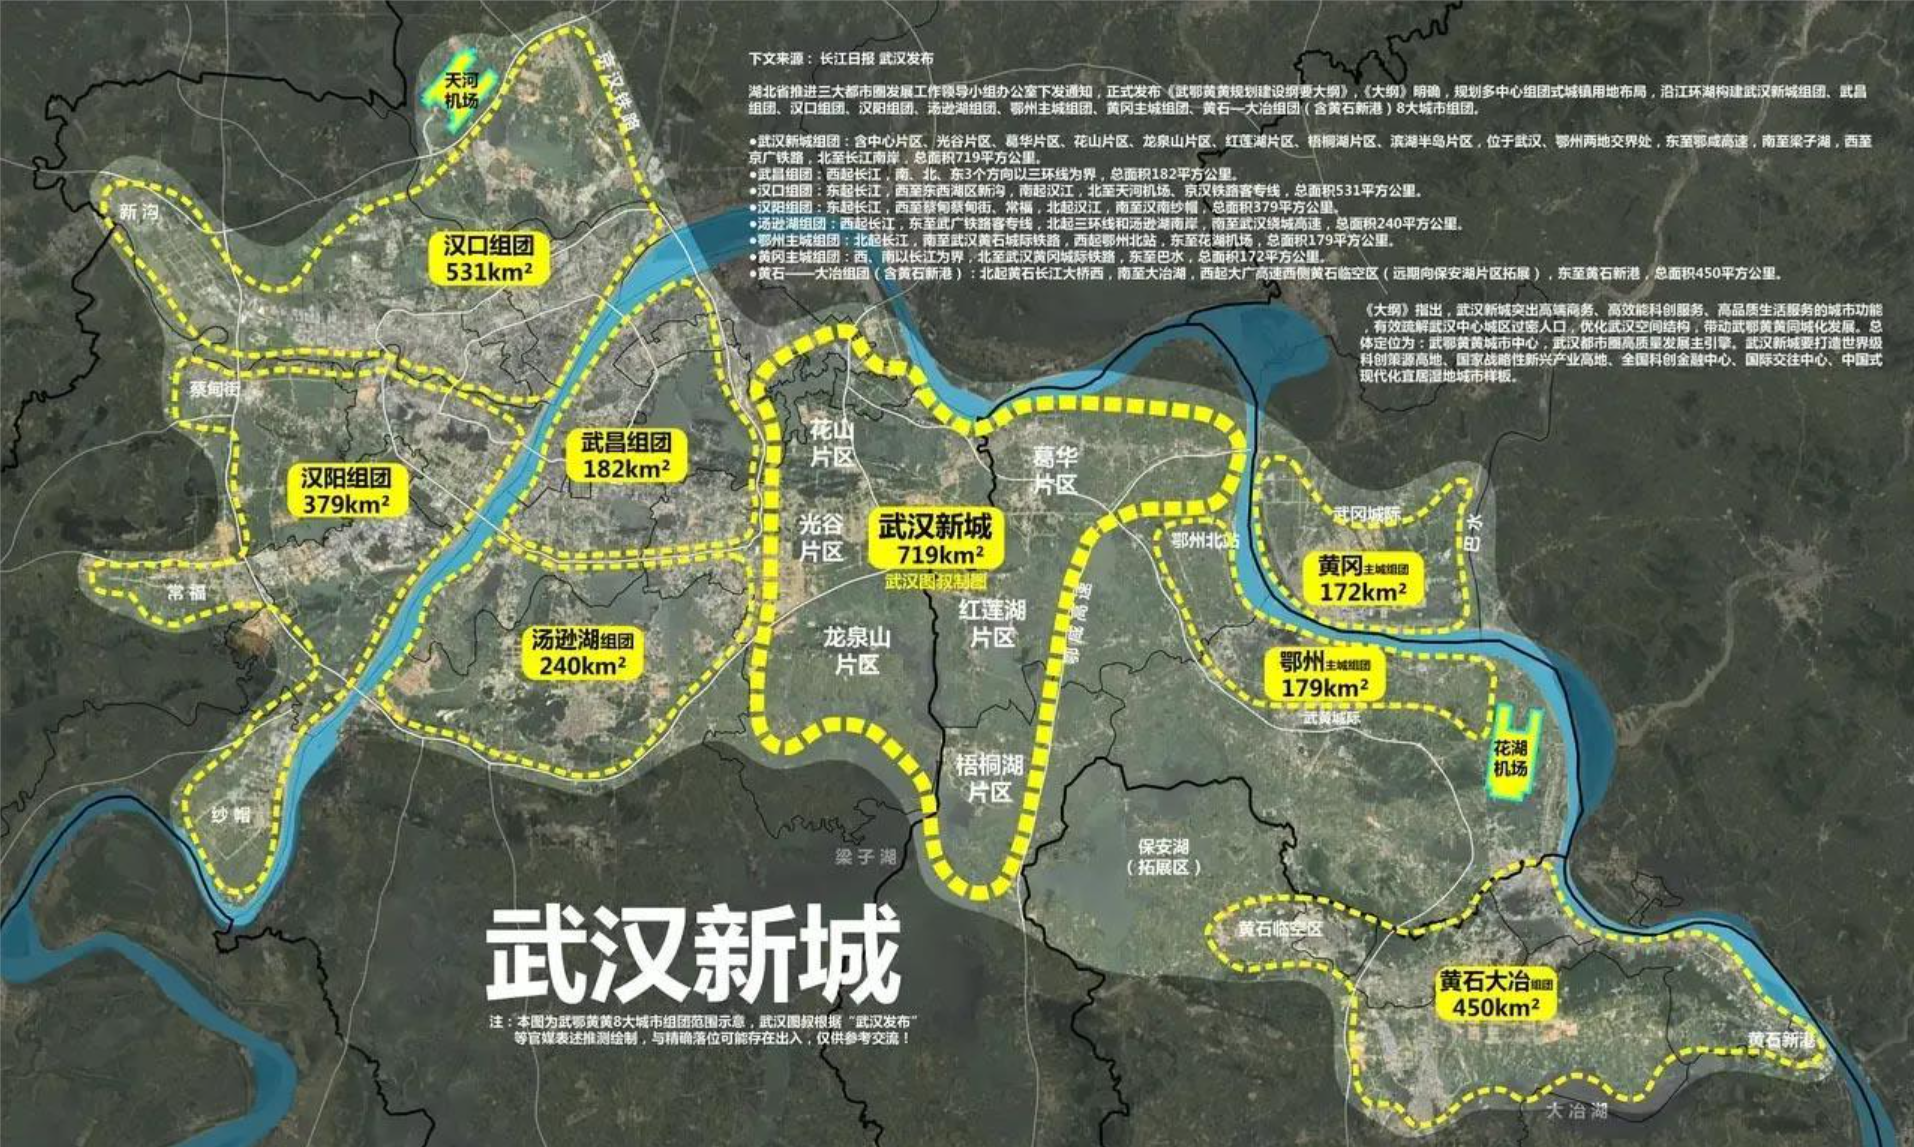 武鄂黄黄都市圈是否需要扩容,将长江新区和双柳纳入组团名列?